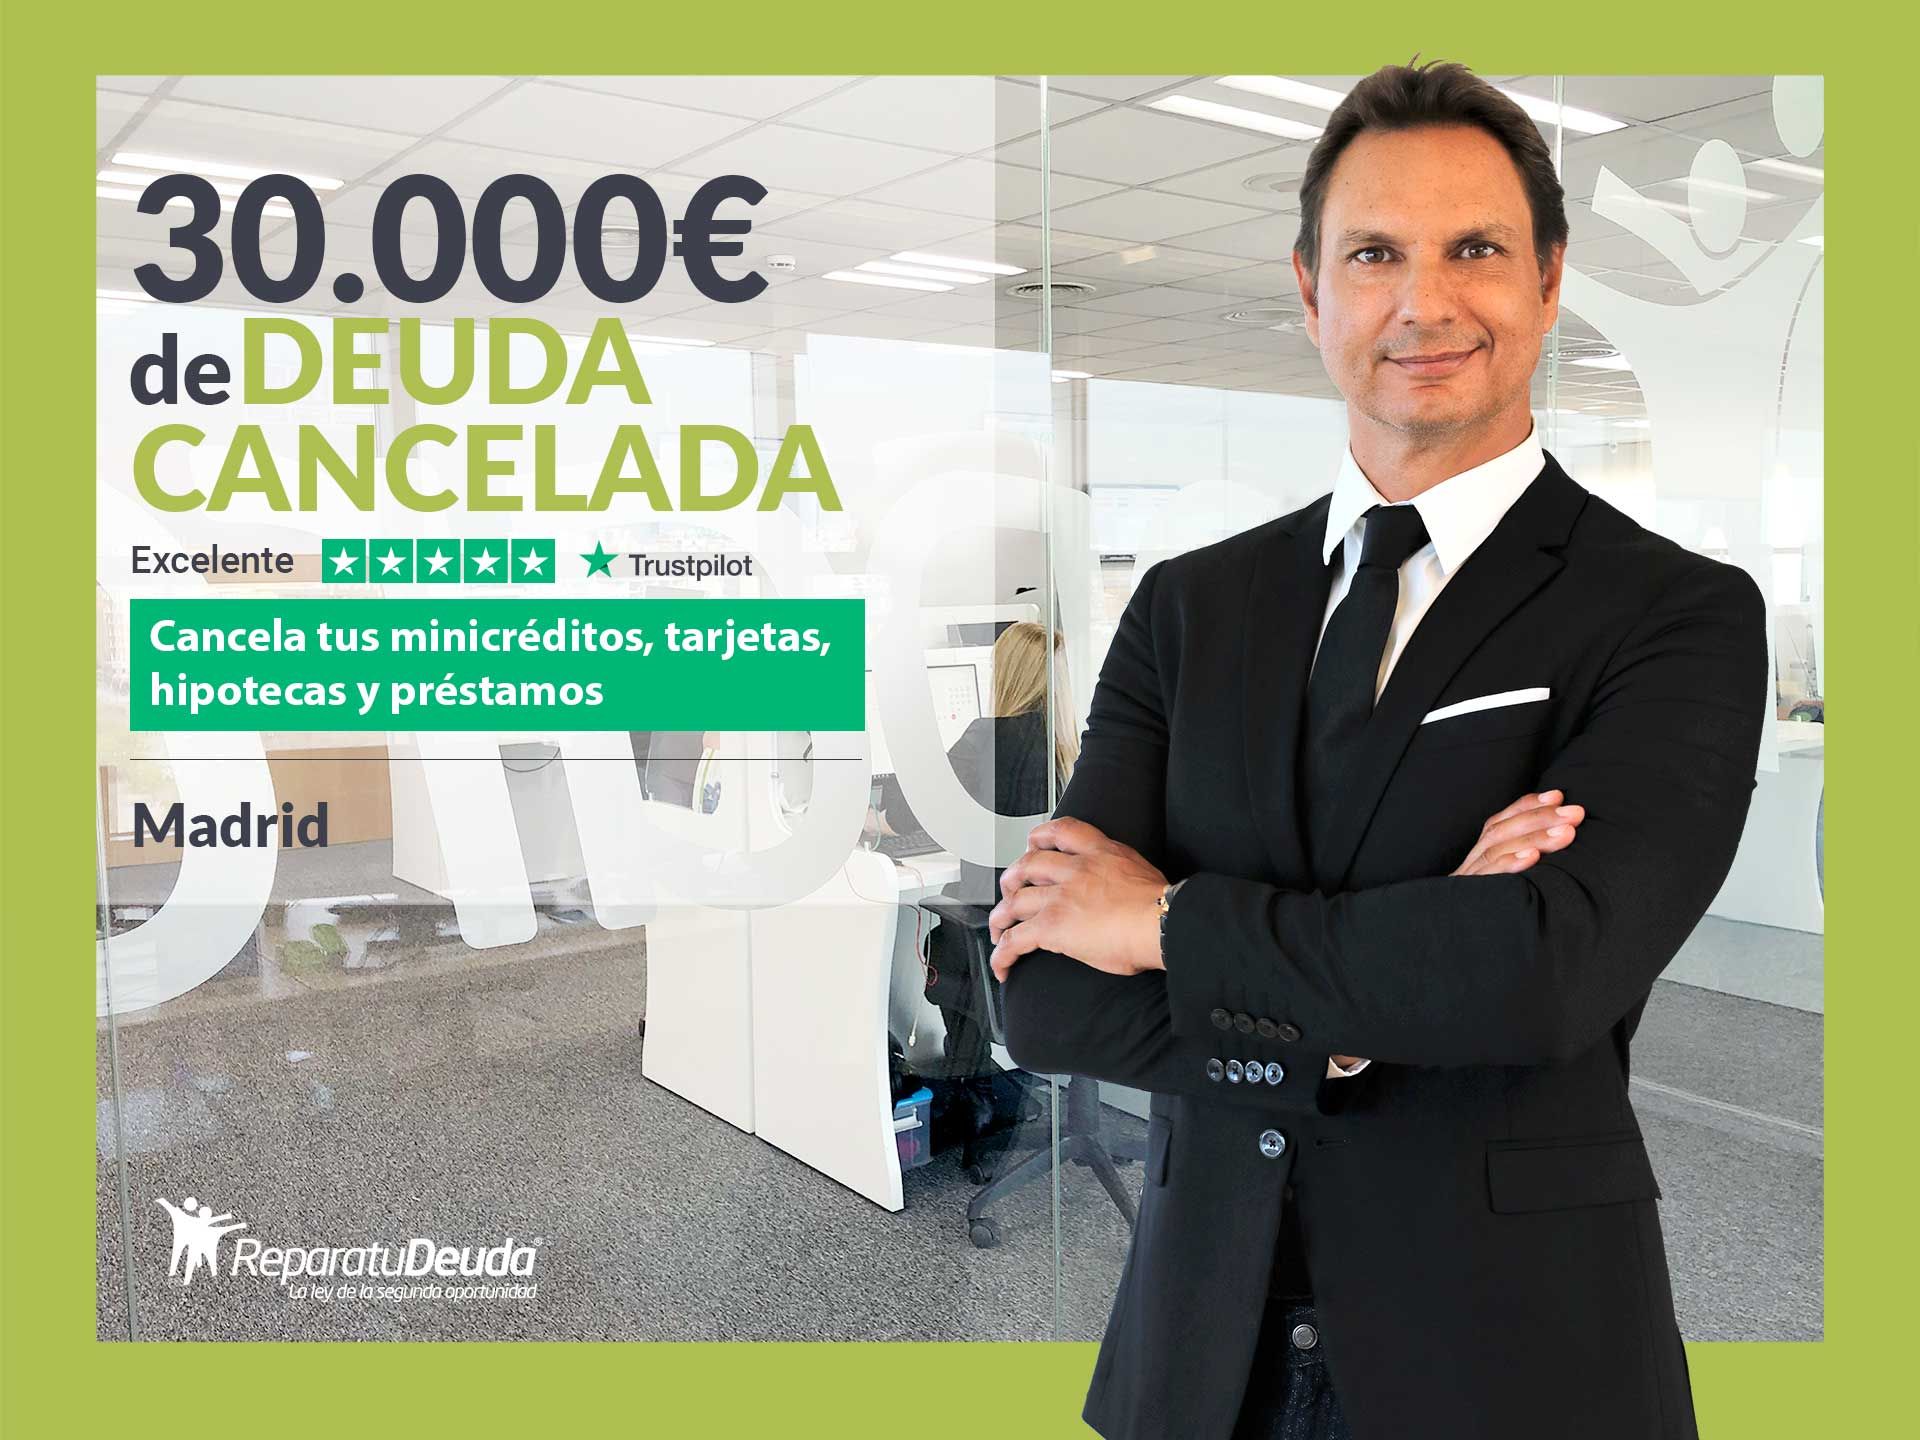 Repara tu Deuda Abogados cancela 30.000? en Madrid con la Ley de Segunda Oportunidad